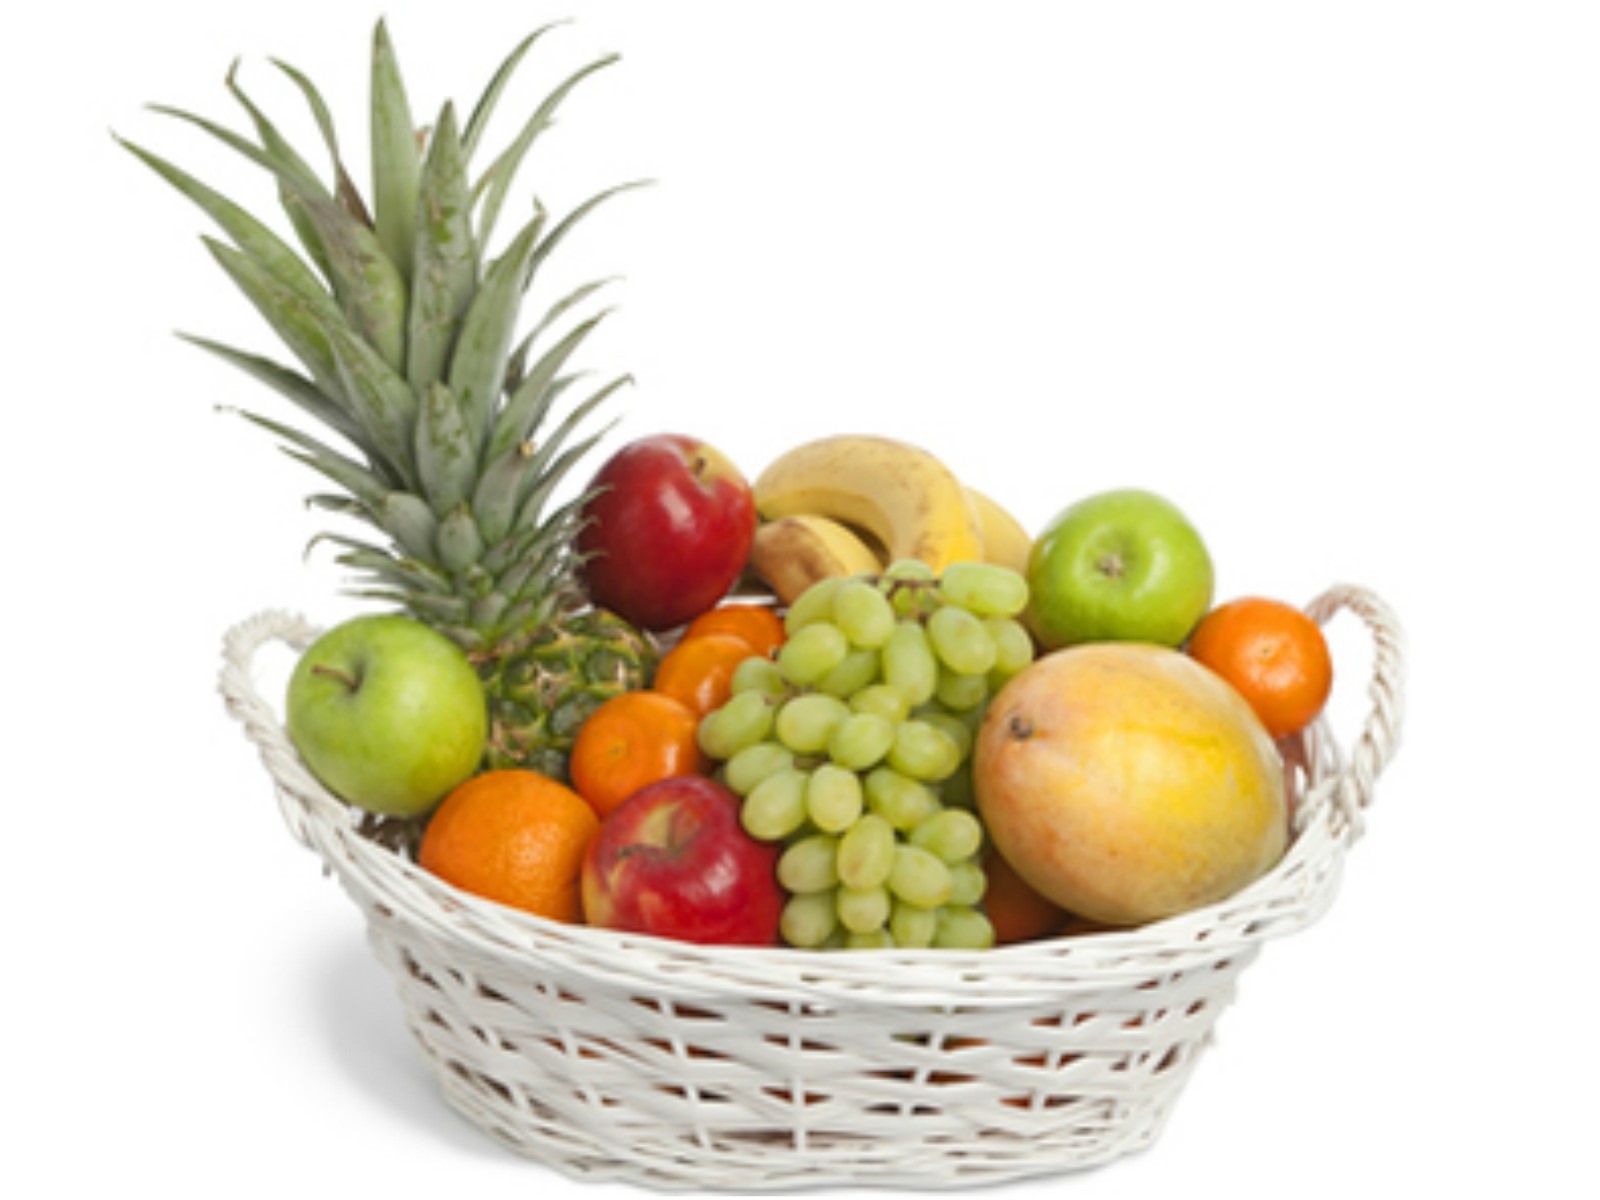 Assorted Fruit Basket - Fruits - Shop Categories